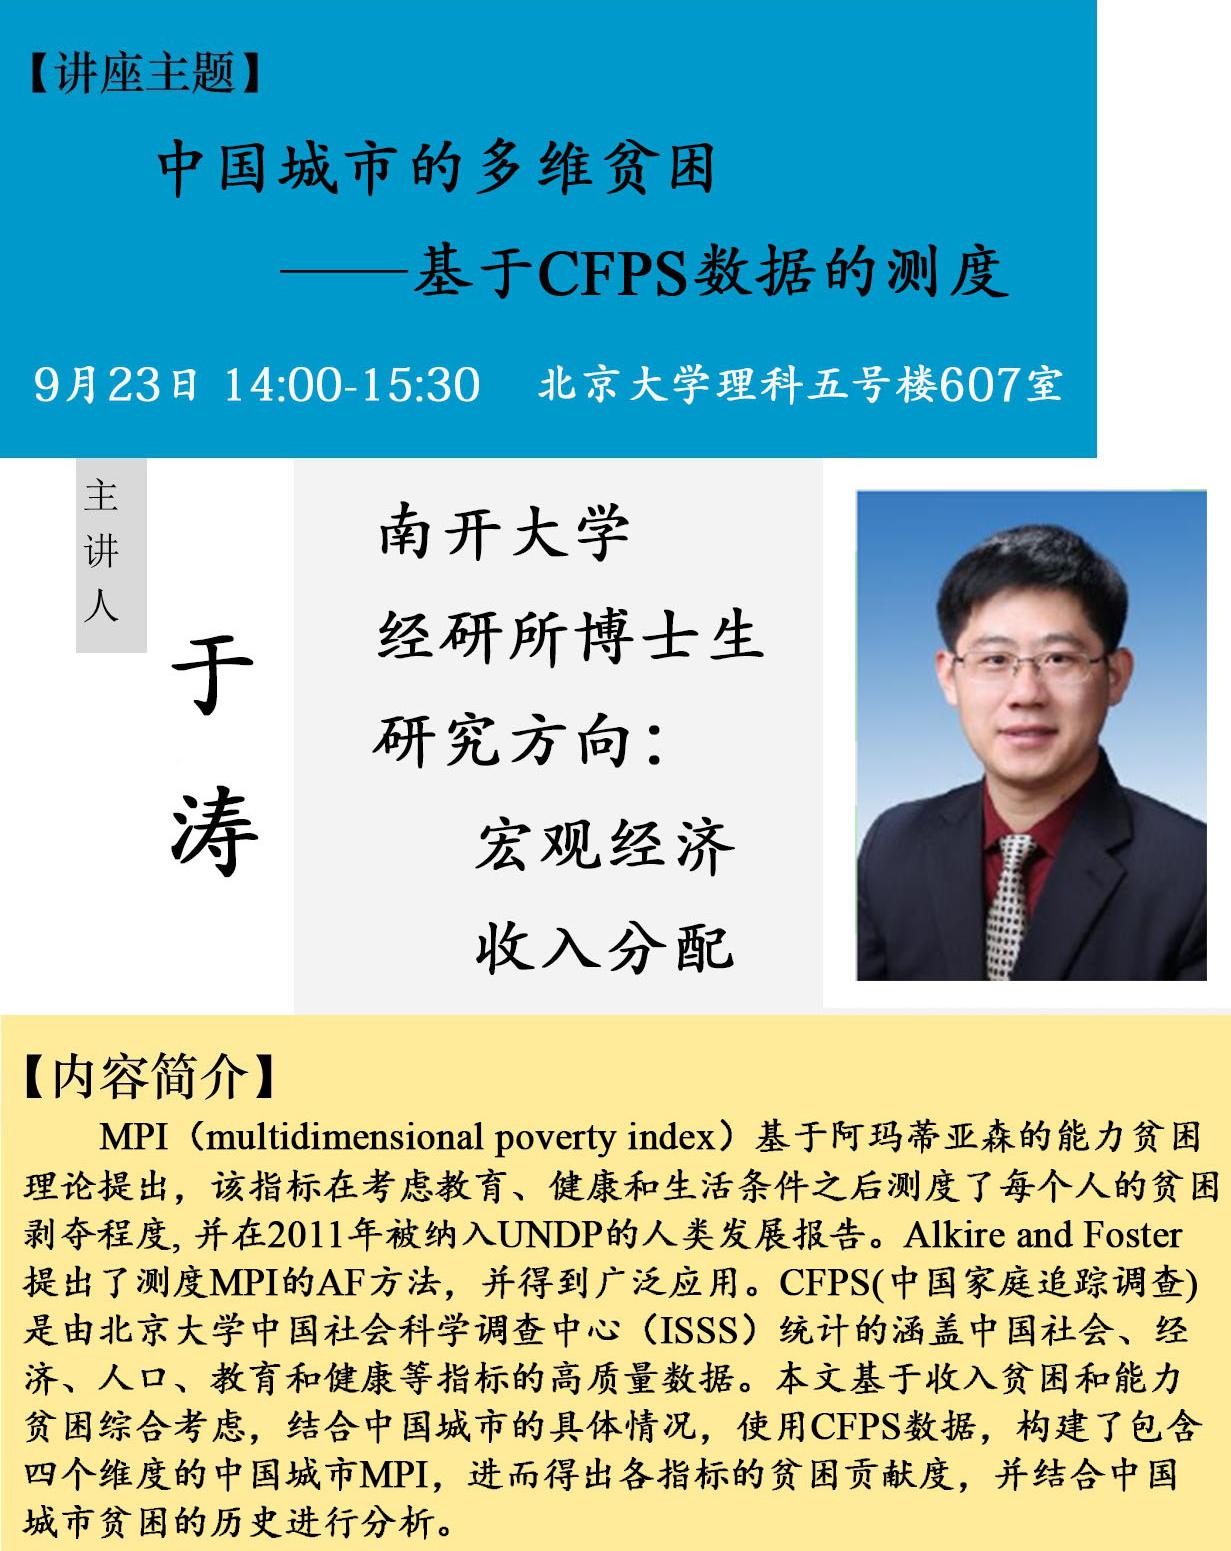 讲座预告:《中国城市的多维贫困——基于CFPS数据的测度》